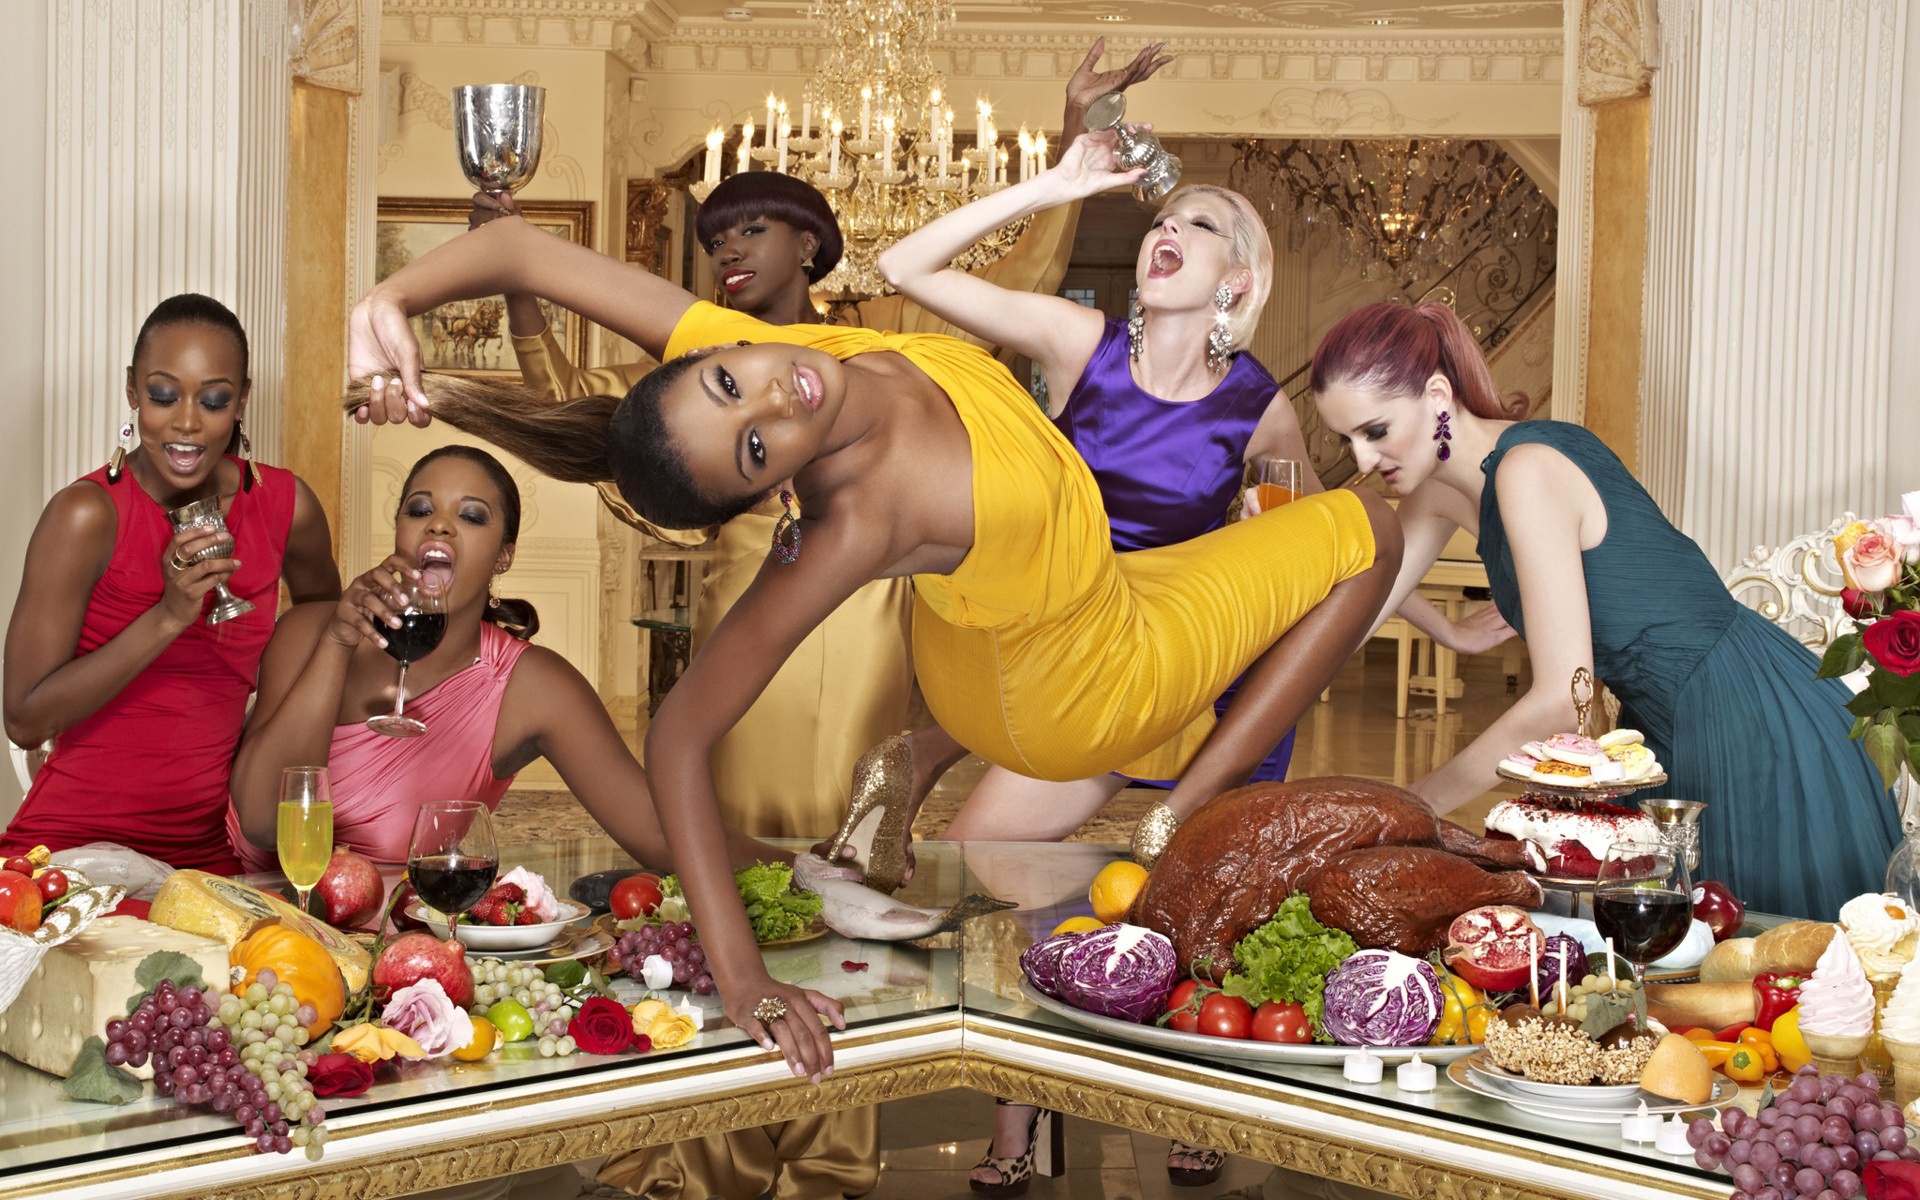 Женщины развлекают. Смешная вечеринка. Танцы на столе. Женщина на столе с едой. Куча девушек.